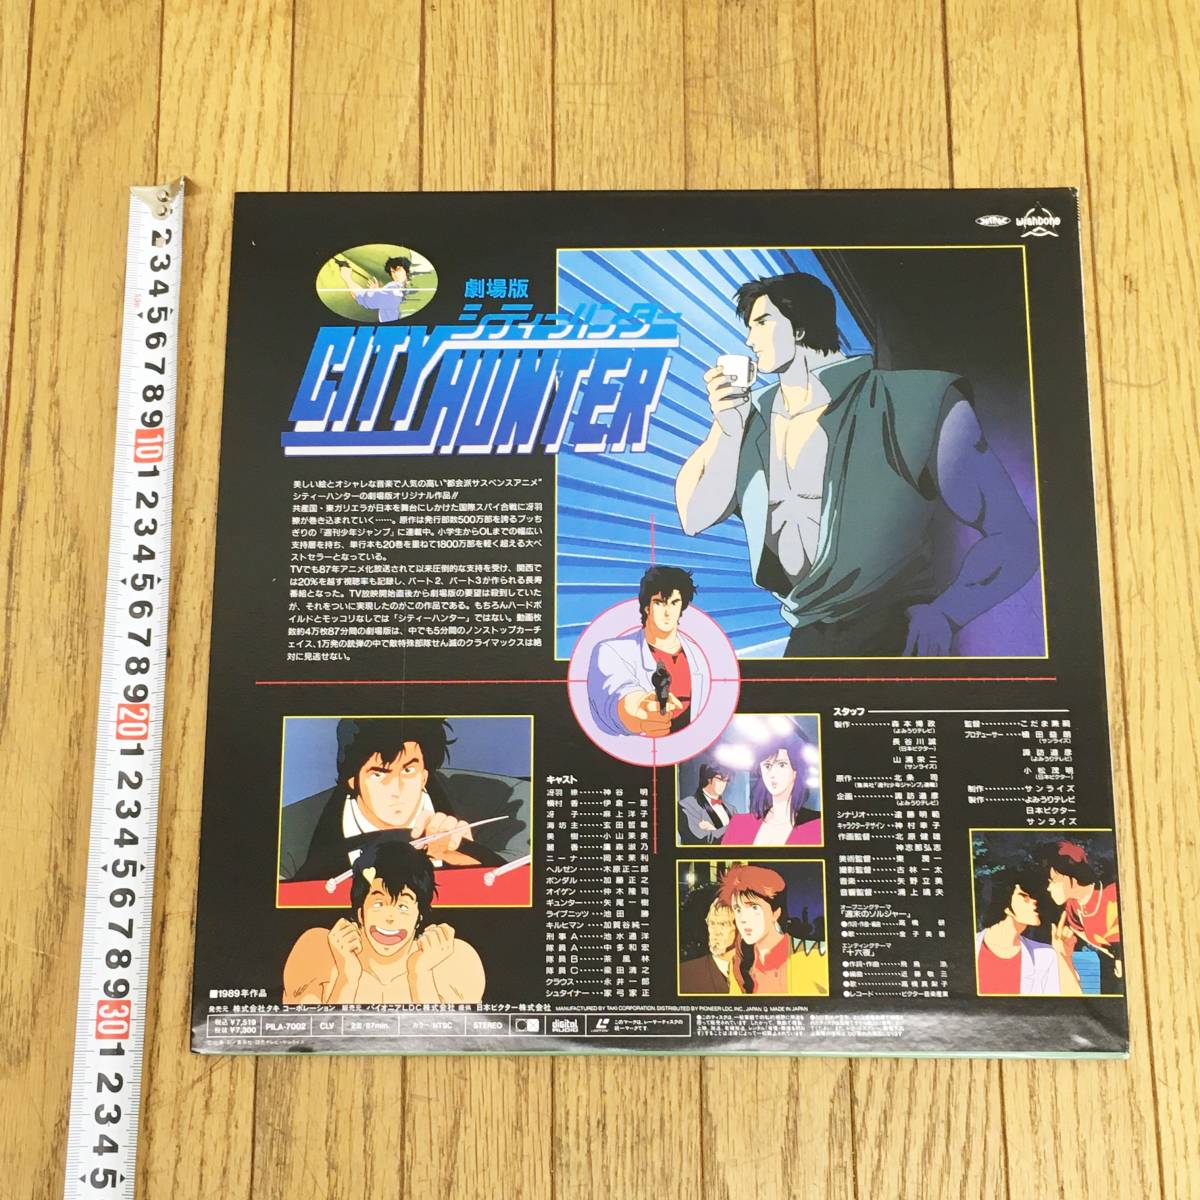  театр версия City Hunter love .. жизнь. Magnum / лазерный диск /. перо ./ север статья ./ бог . Akira / аниме /ld/ коллекция / Junk 